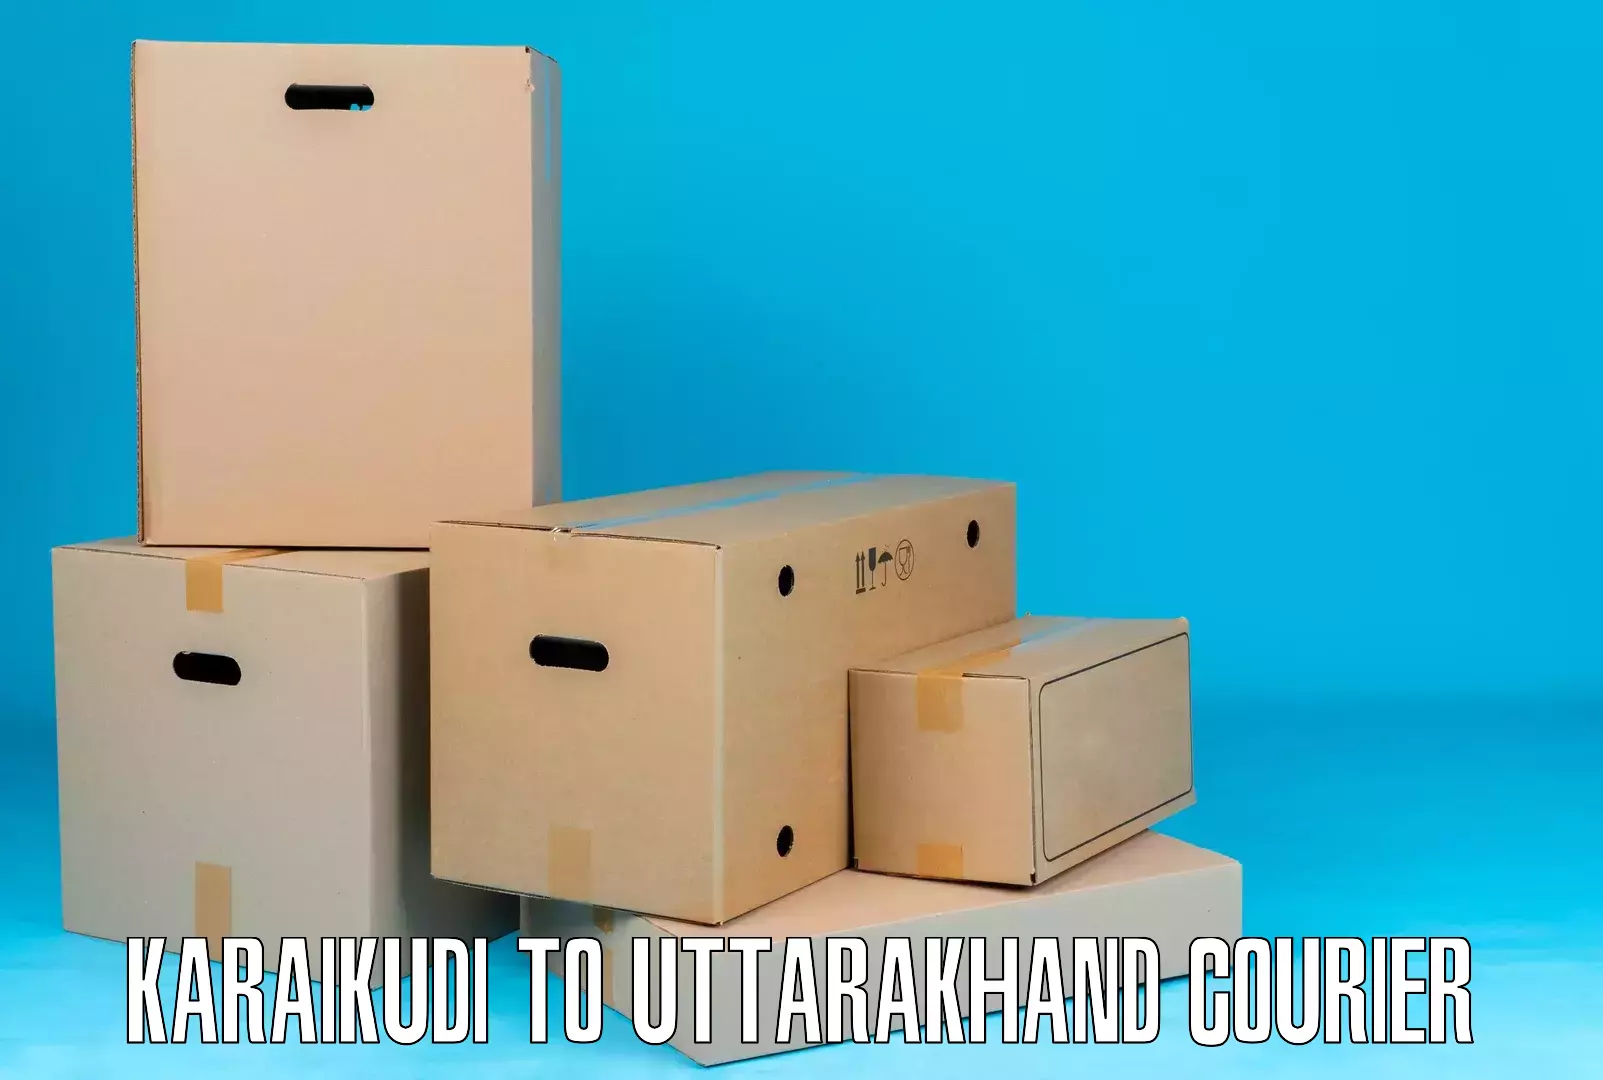 Logistics solutions Karaikudi to Uttarakhand